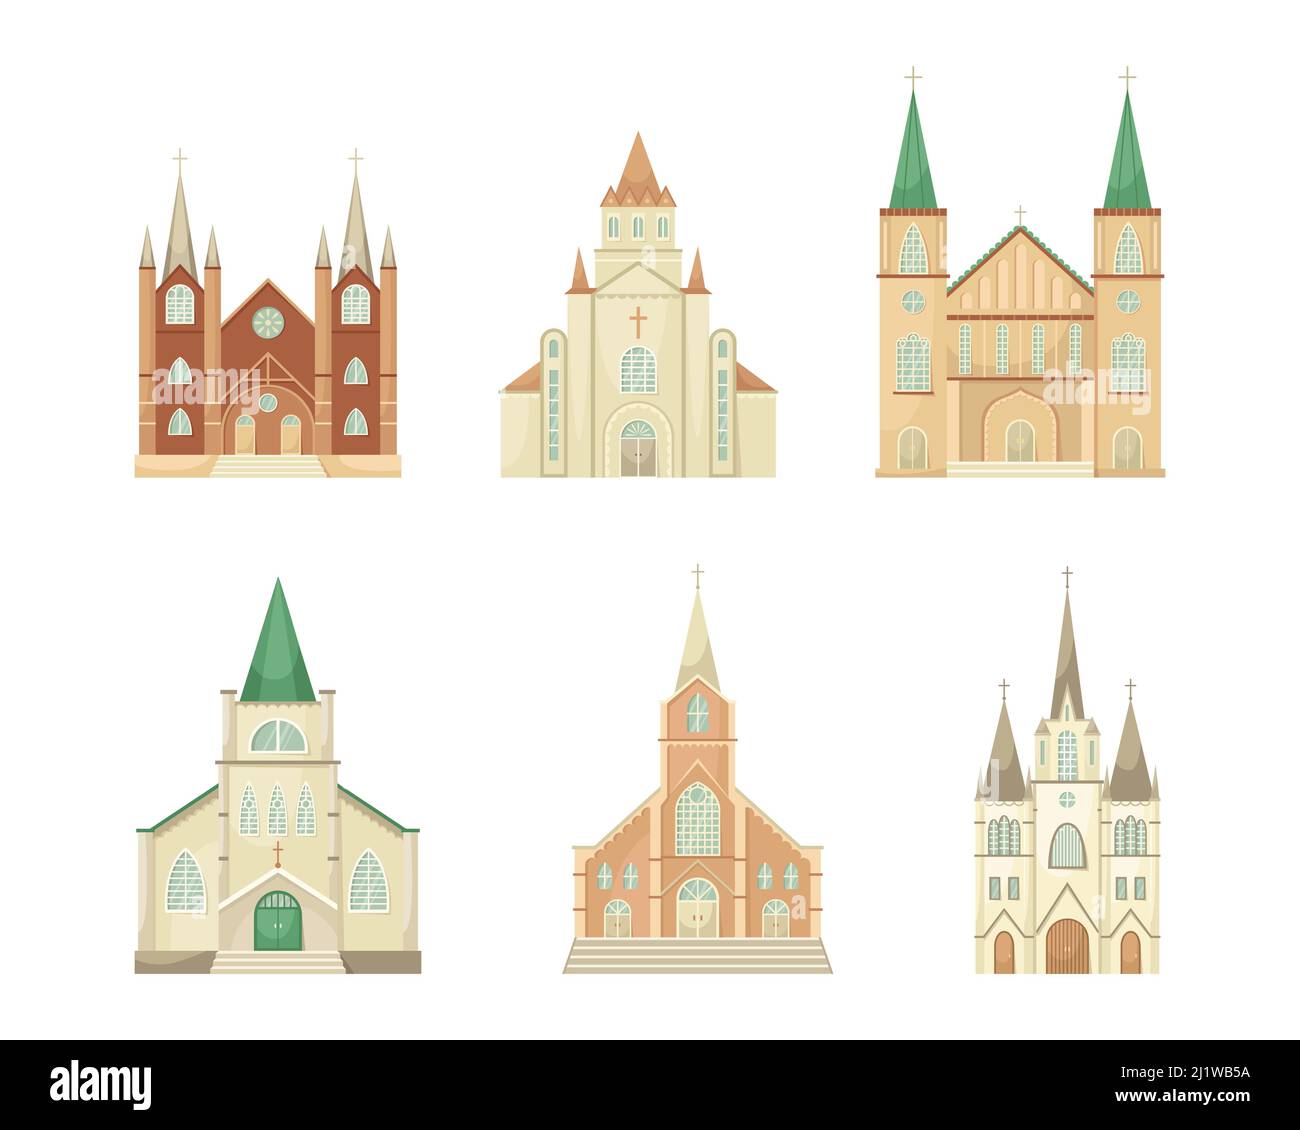 Ensemble vectoriel d'illustrations d'églises catholiques. Bâtiment architectural religieux. Style plat Illustration de Vecteur